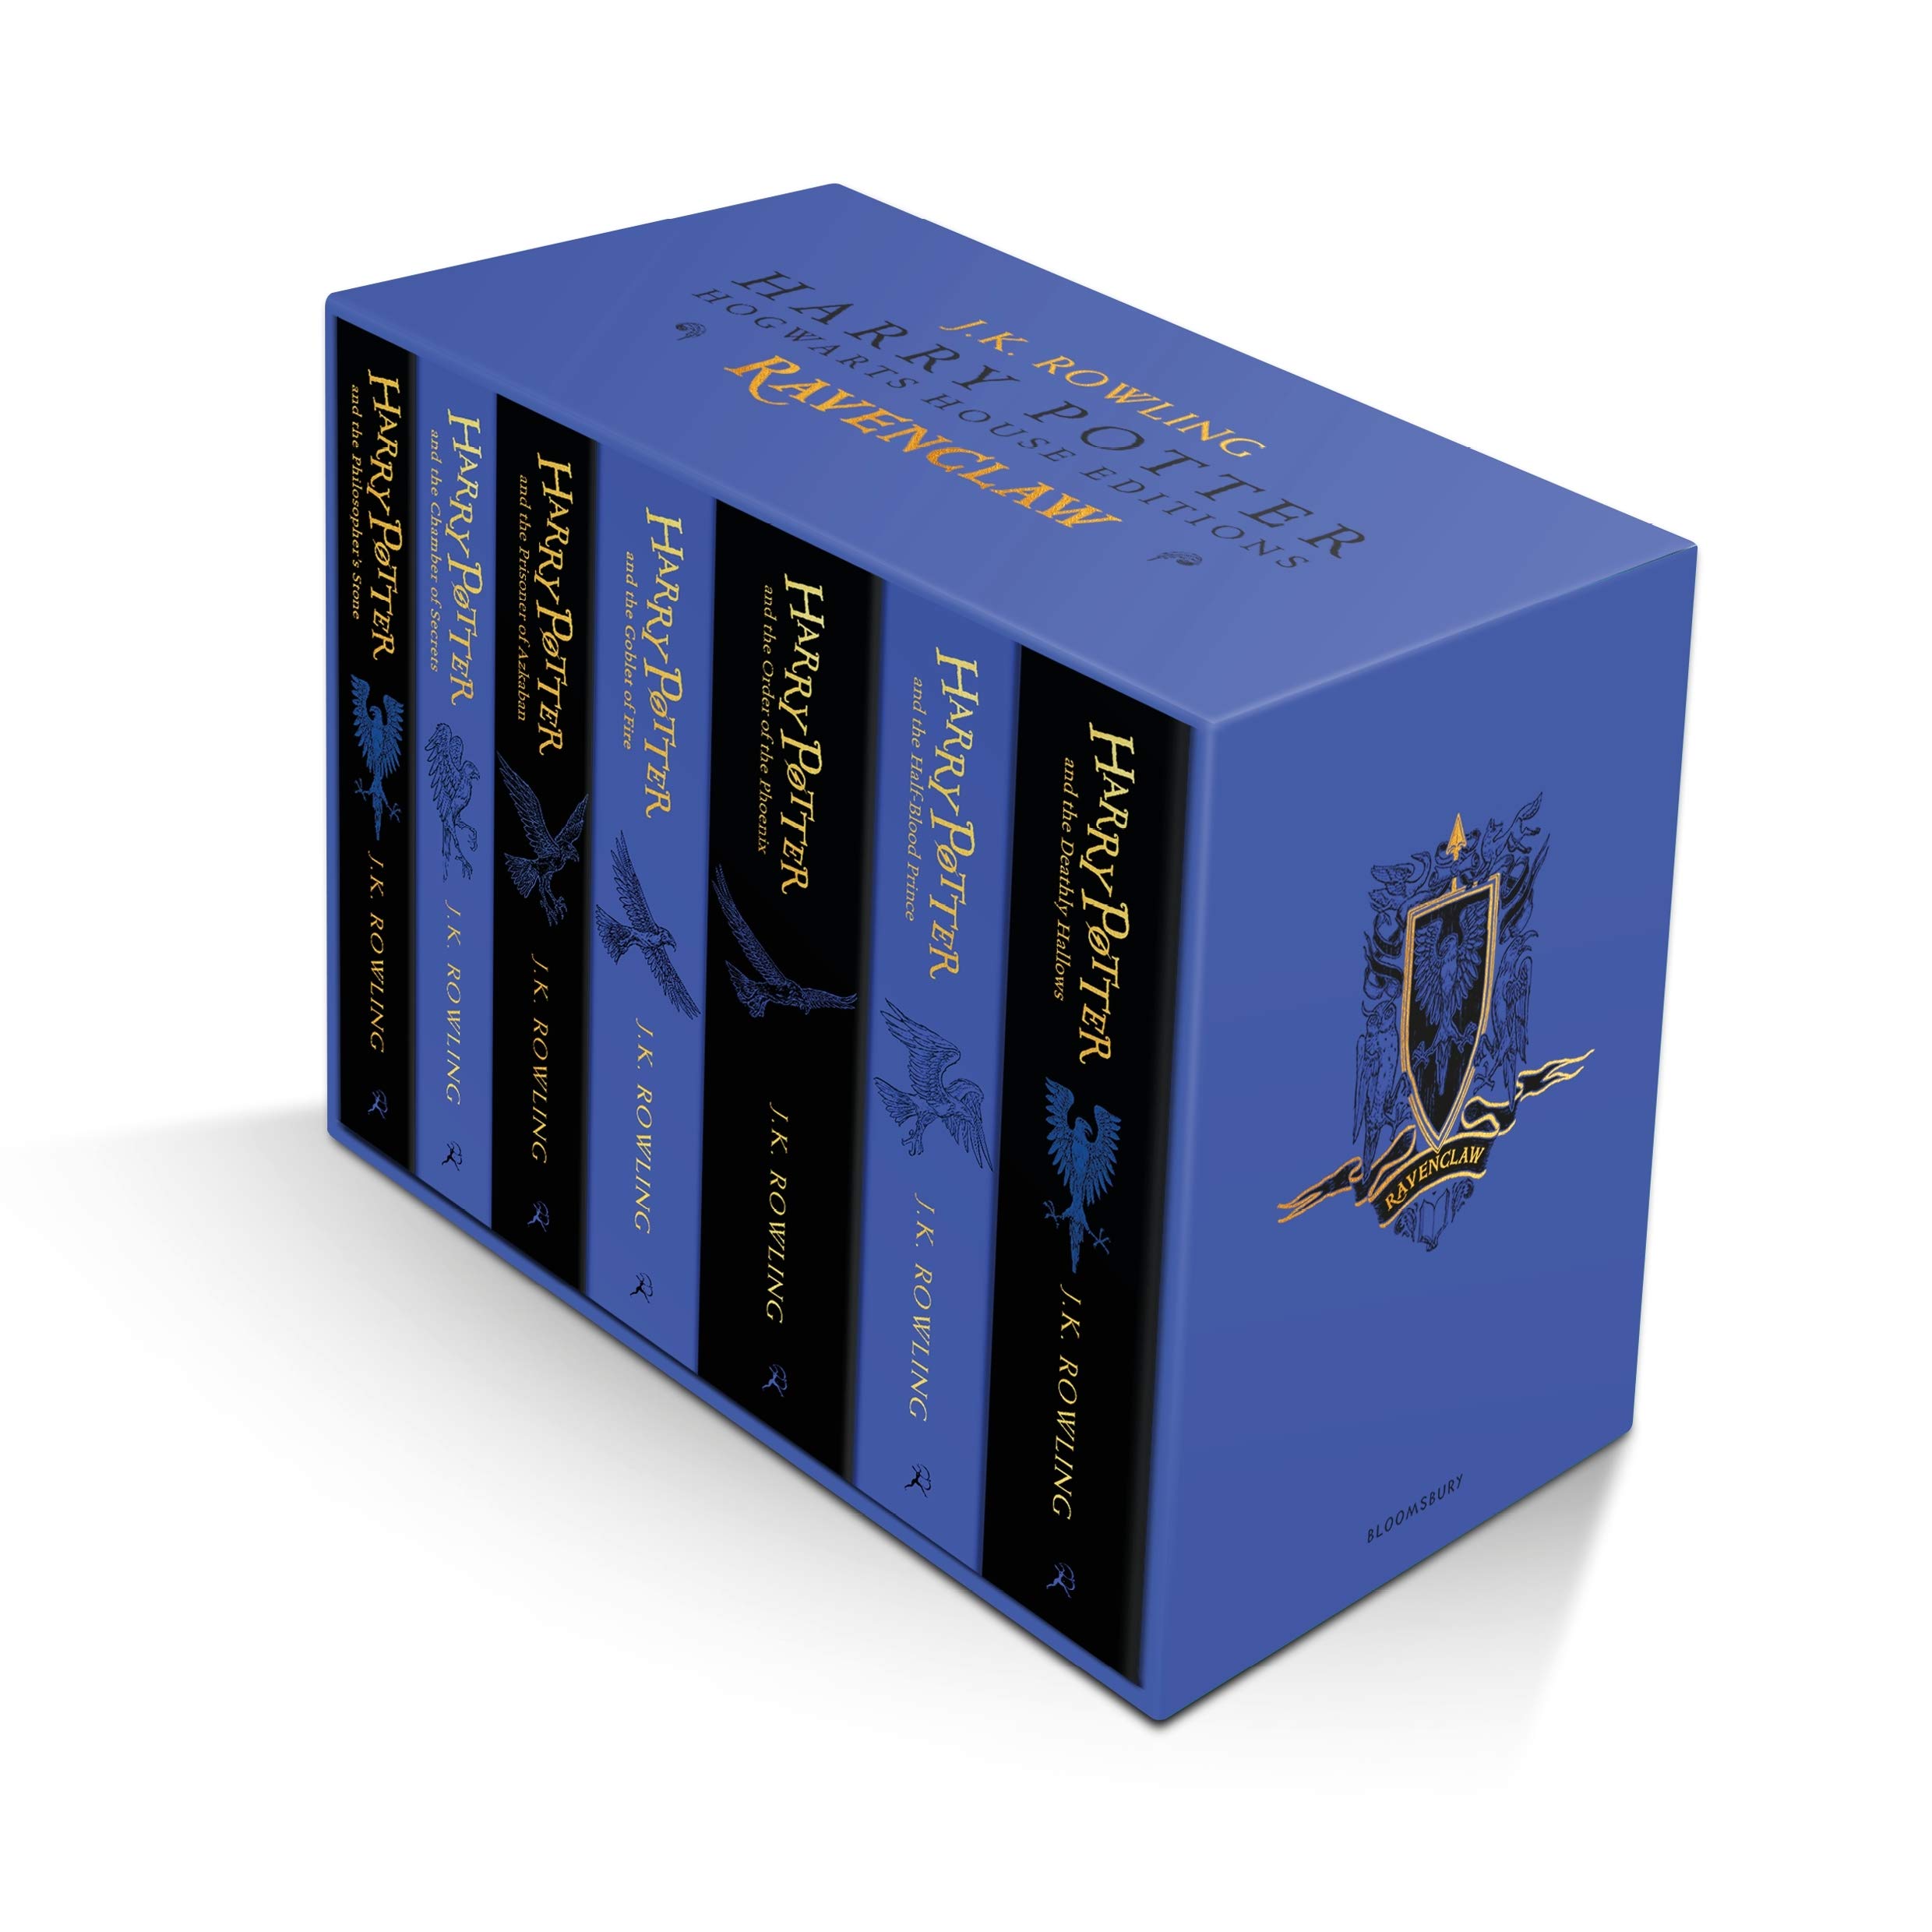 Univers Harry Potter.com - Des coffrets collectors pour les éditions '4  Maisons' de Harry Potter ! - Toute l'actualité du Wizarding World !